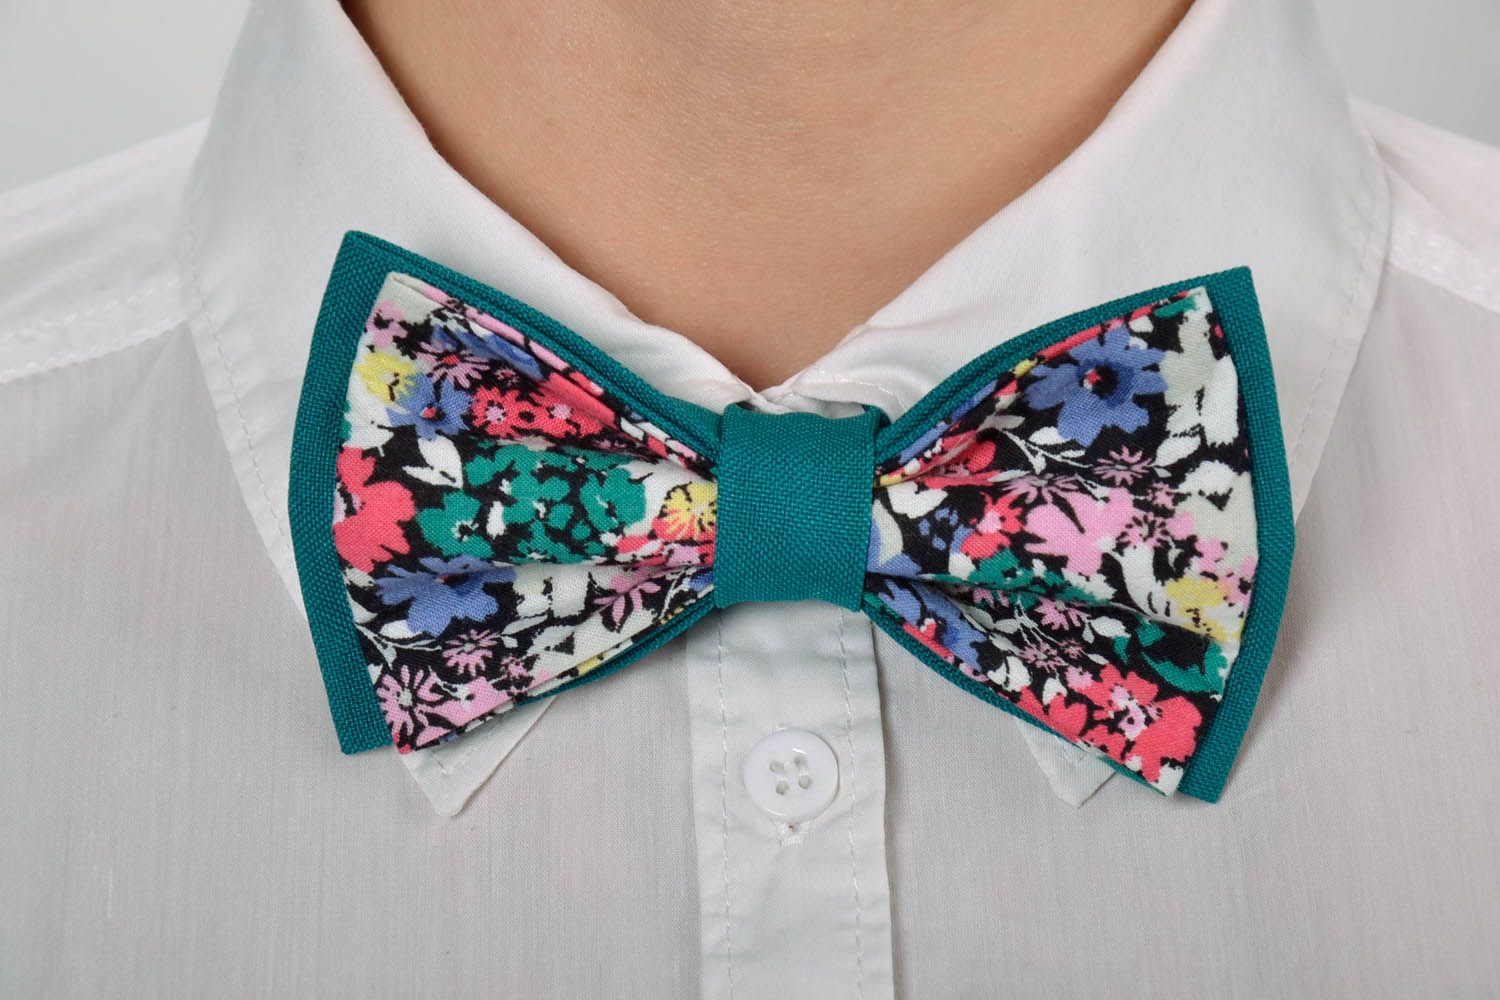 Turquoise bow tie photo 5